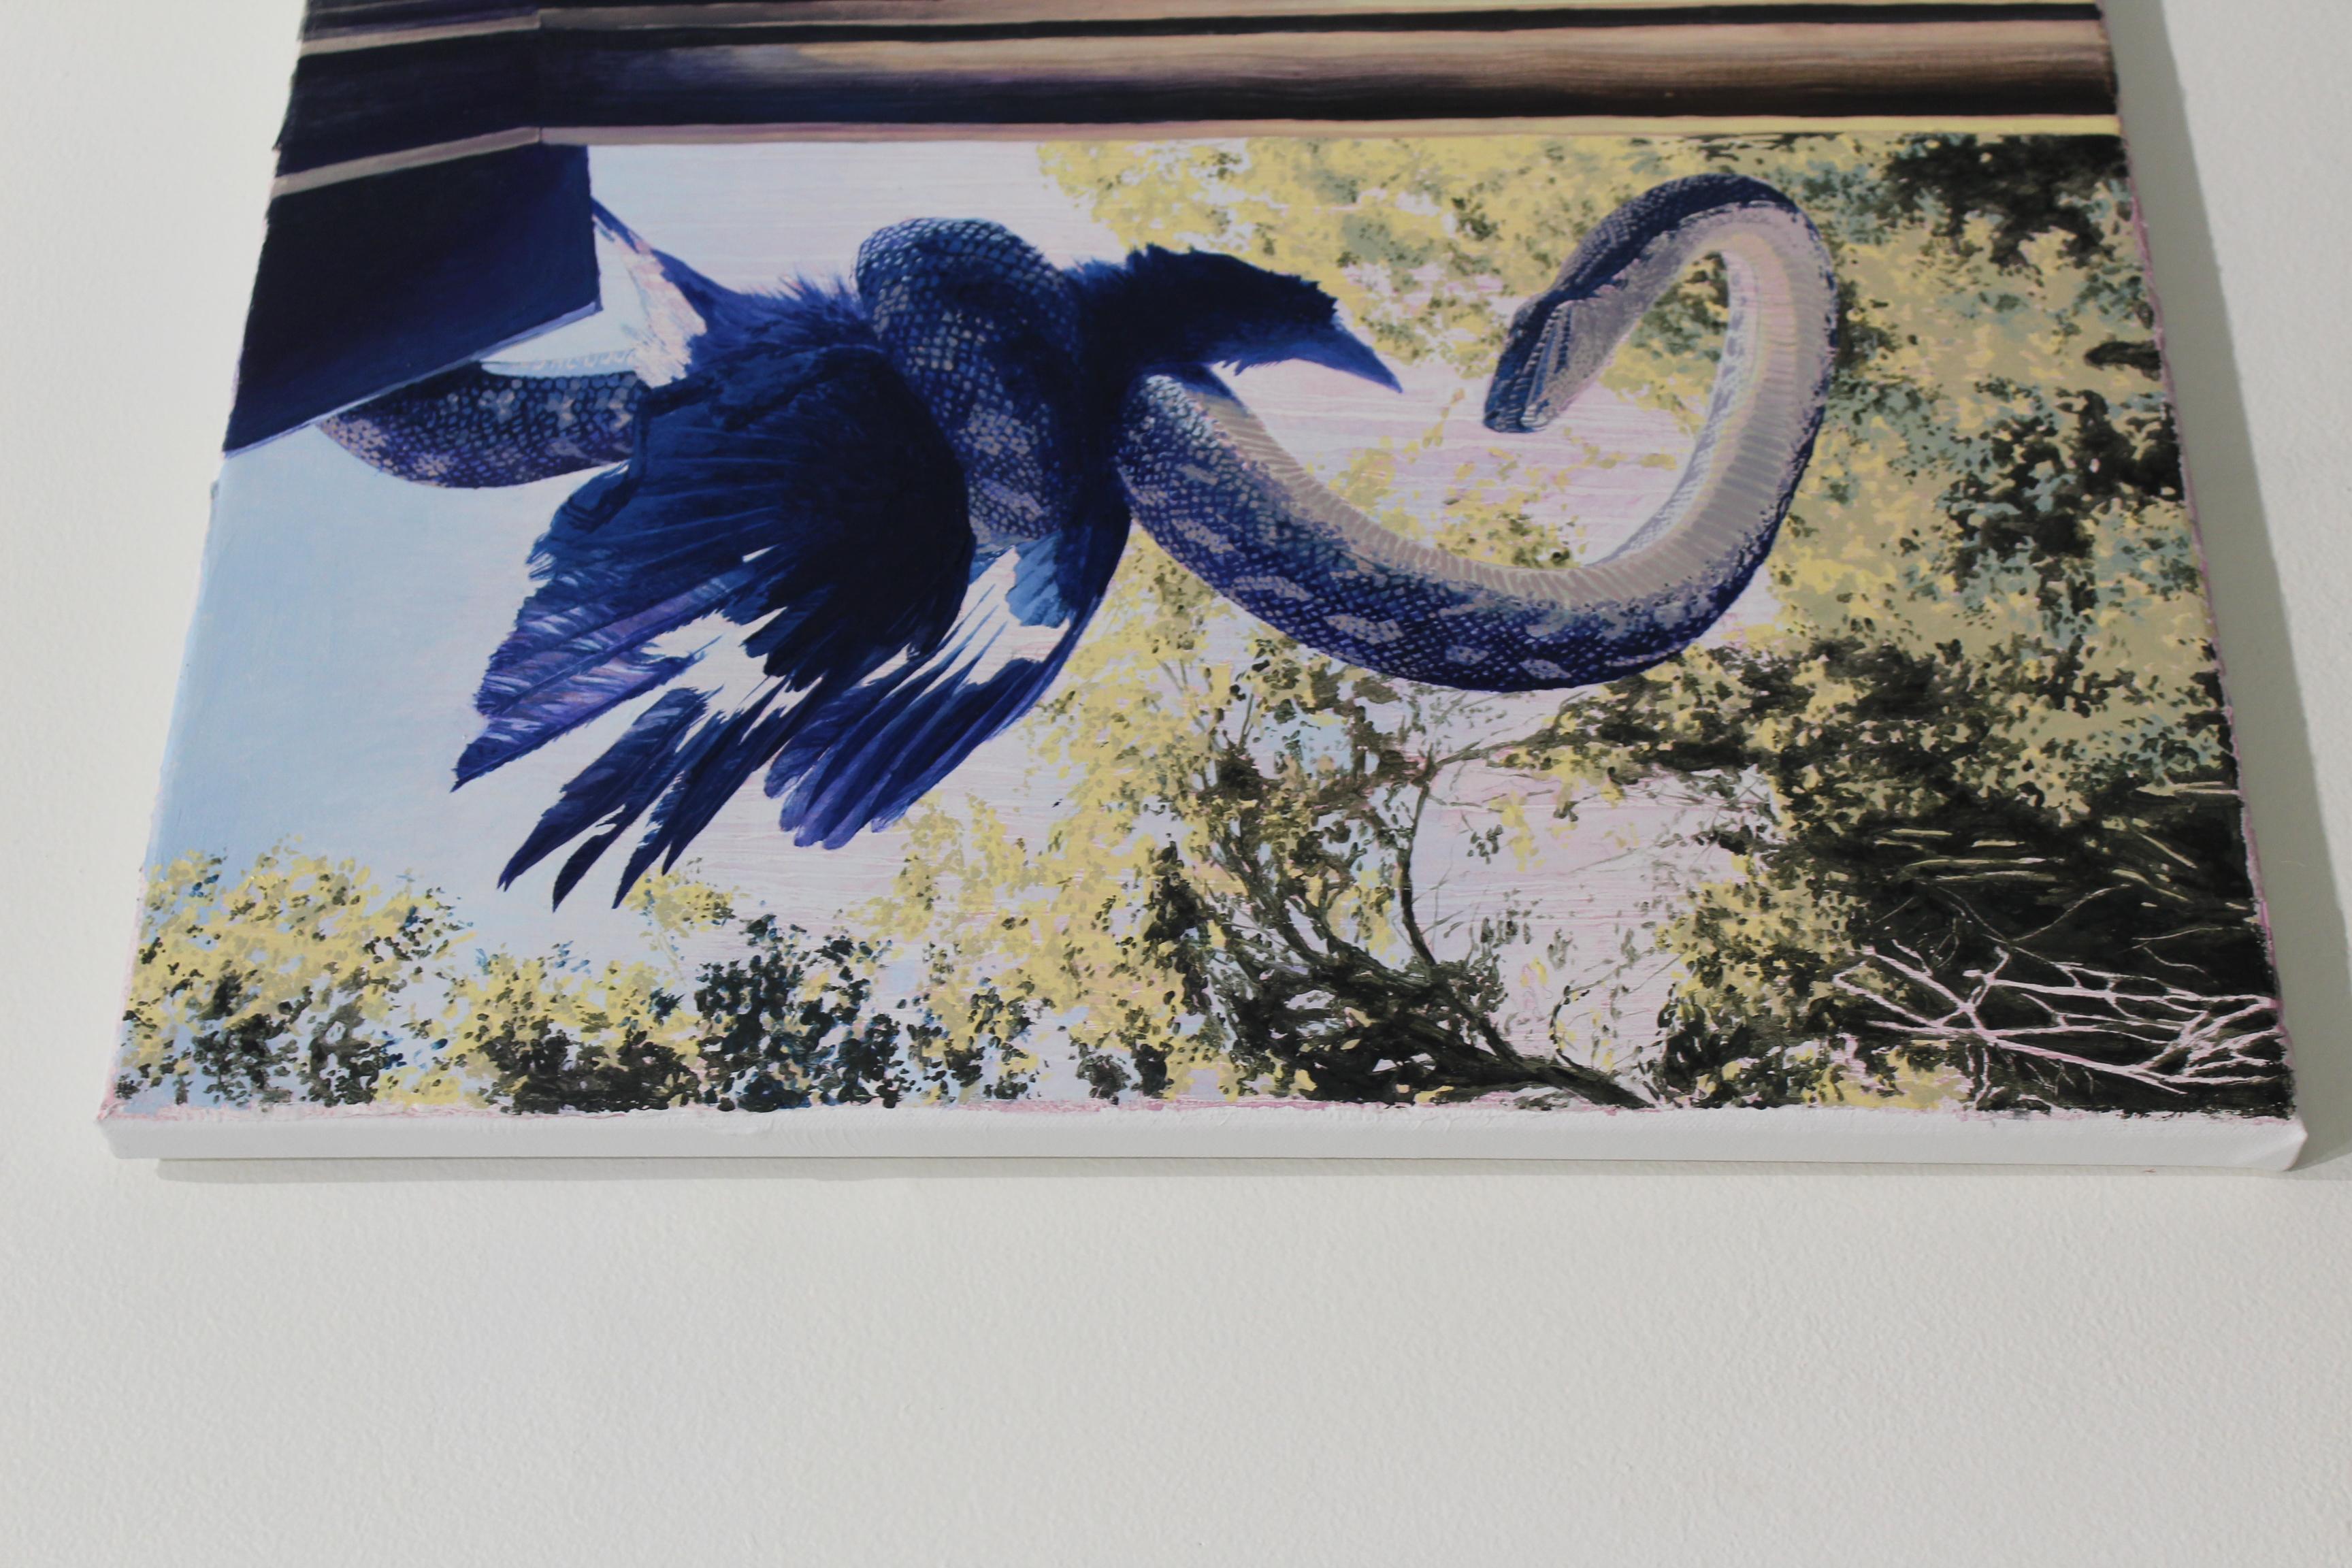 Snake vs. Oiseau - Painting de Paige DeVries